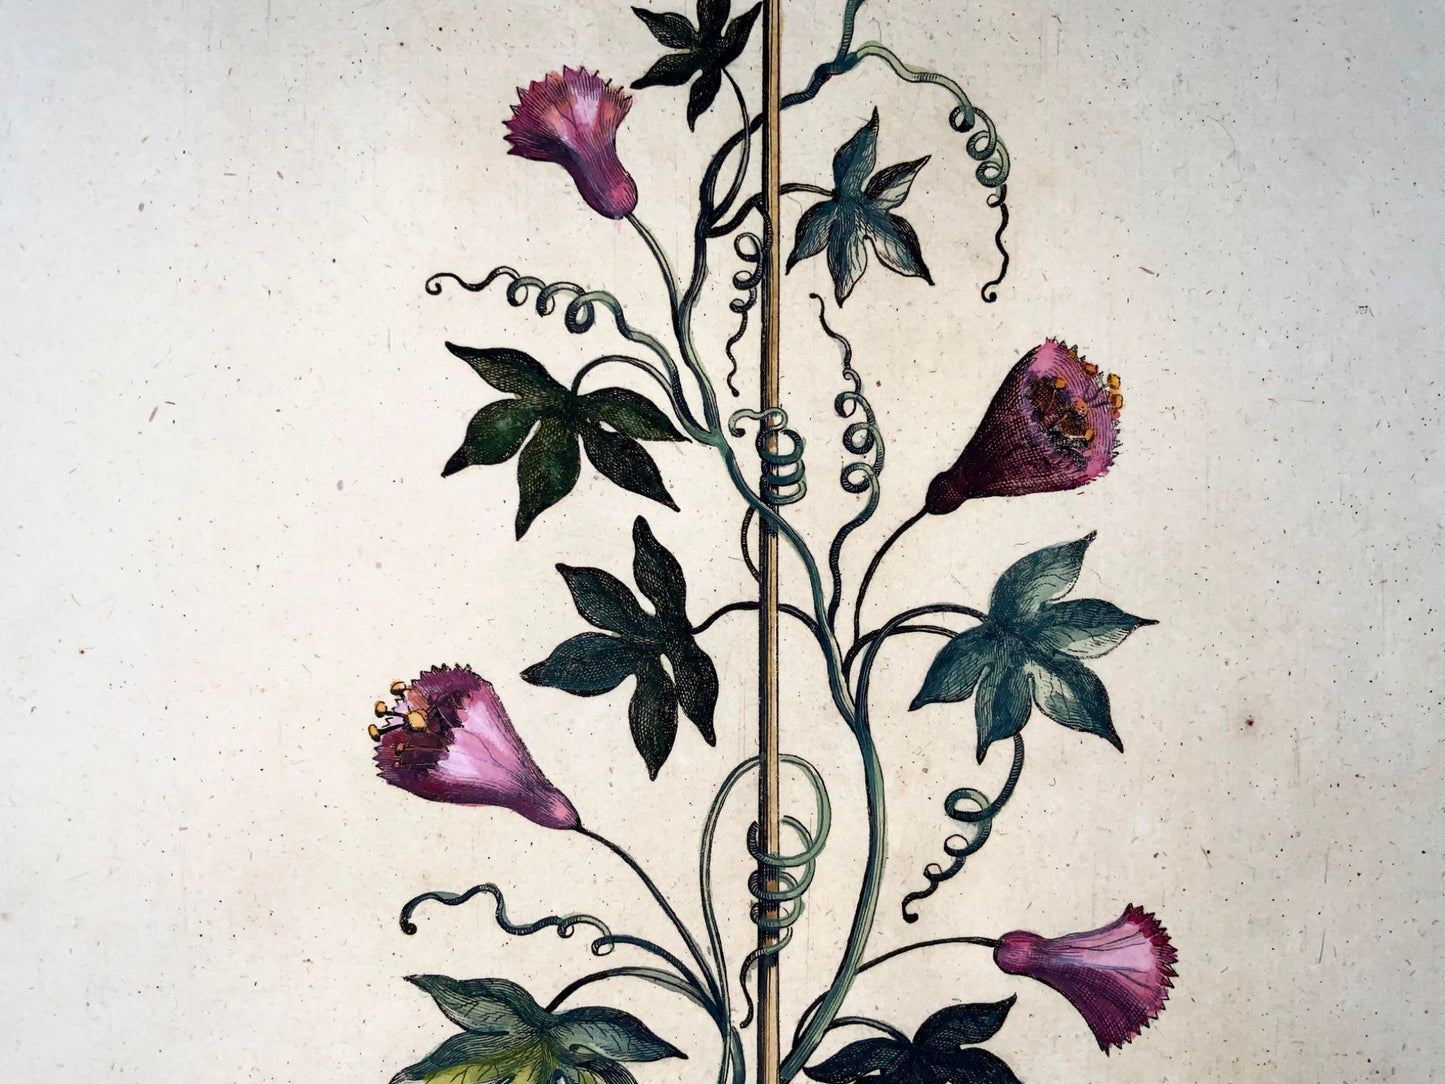 1696 Clematis Passionalis, grand folio, botanique, Abraham Munting, grand folio